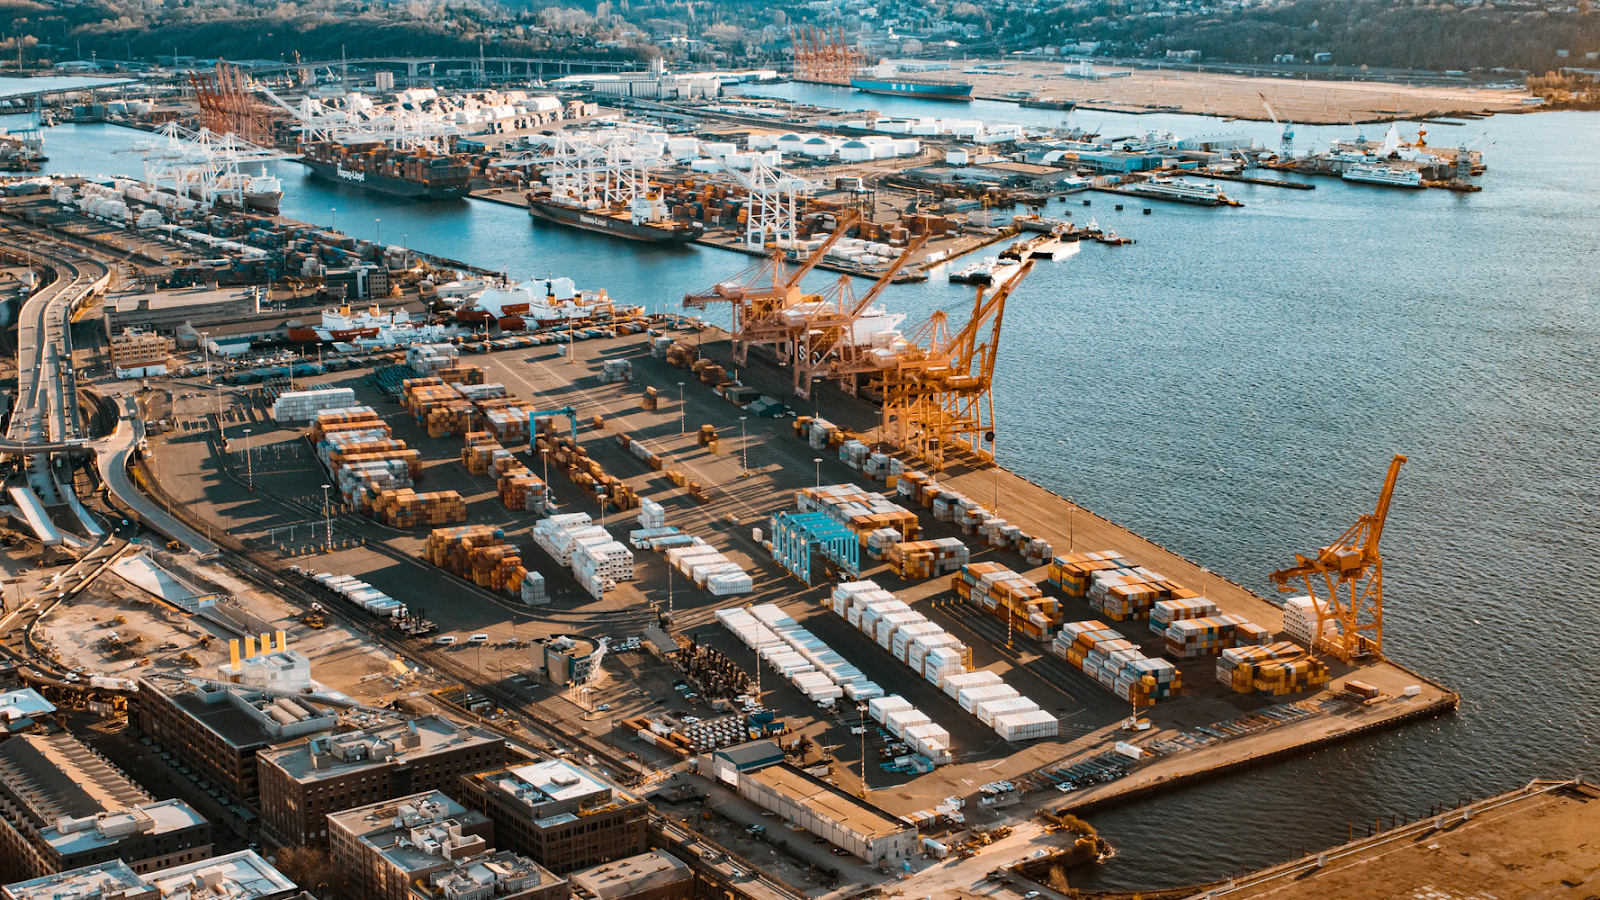 中・西部アフリカのゲートウェイとなるクリビ港の開発にフィリピン企業と契約、カメルーン【投資情報有】